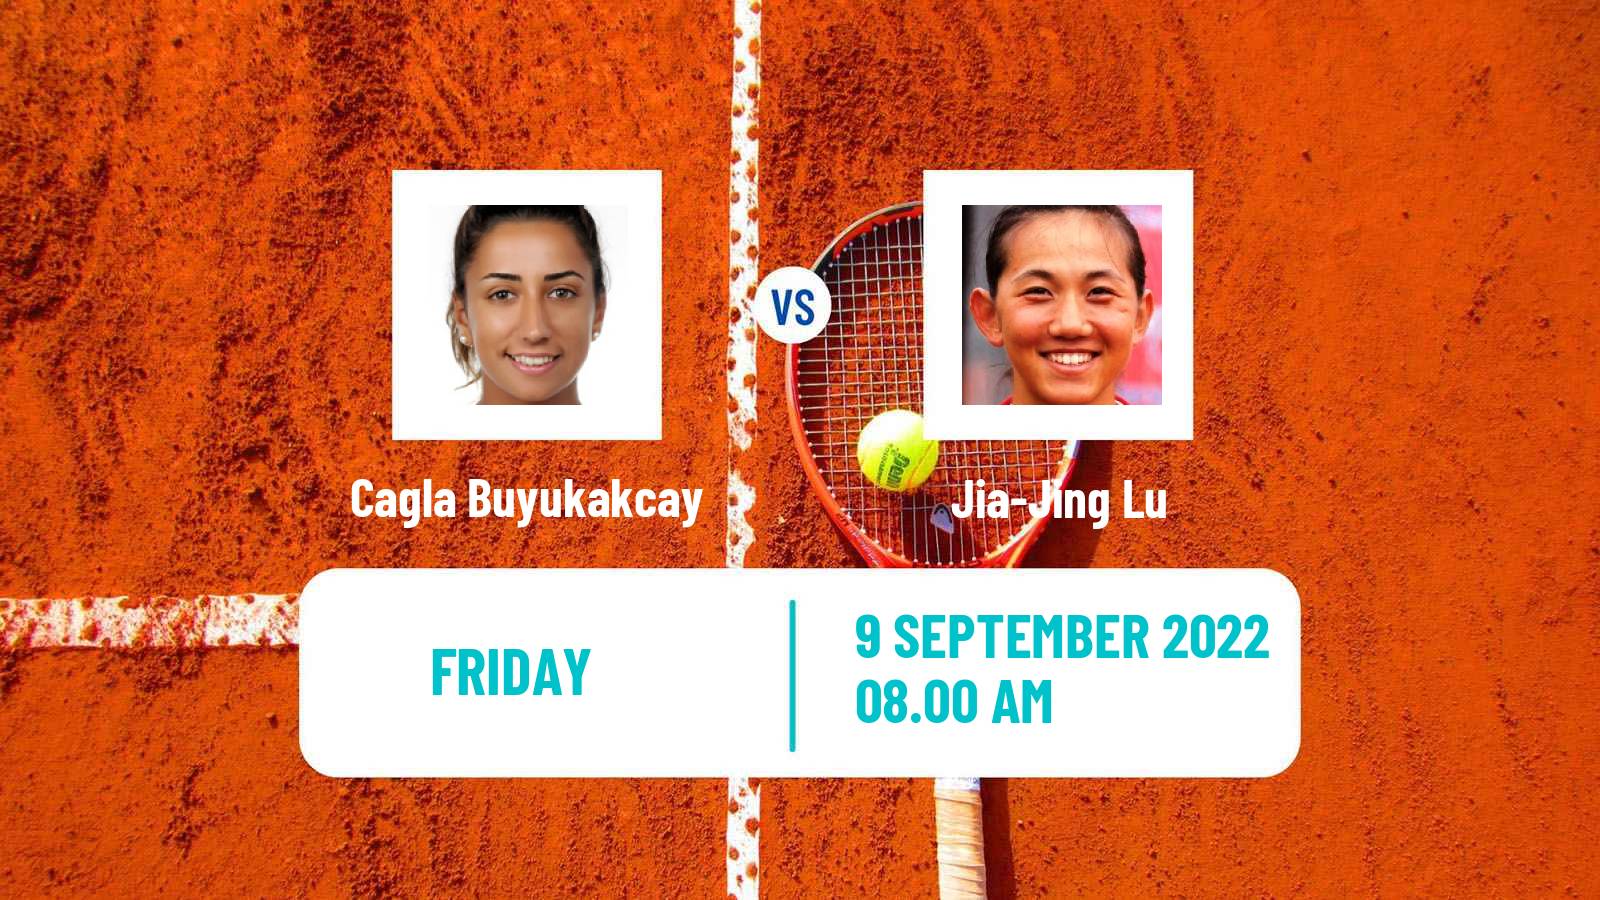 Tennis ITF Tournaments Cagla Buyukakcay - Jia-Jing Lu